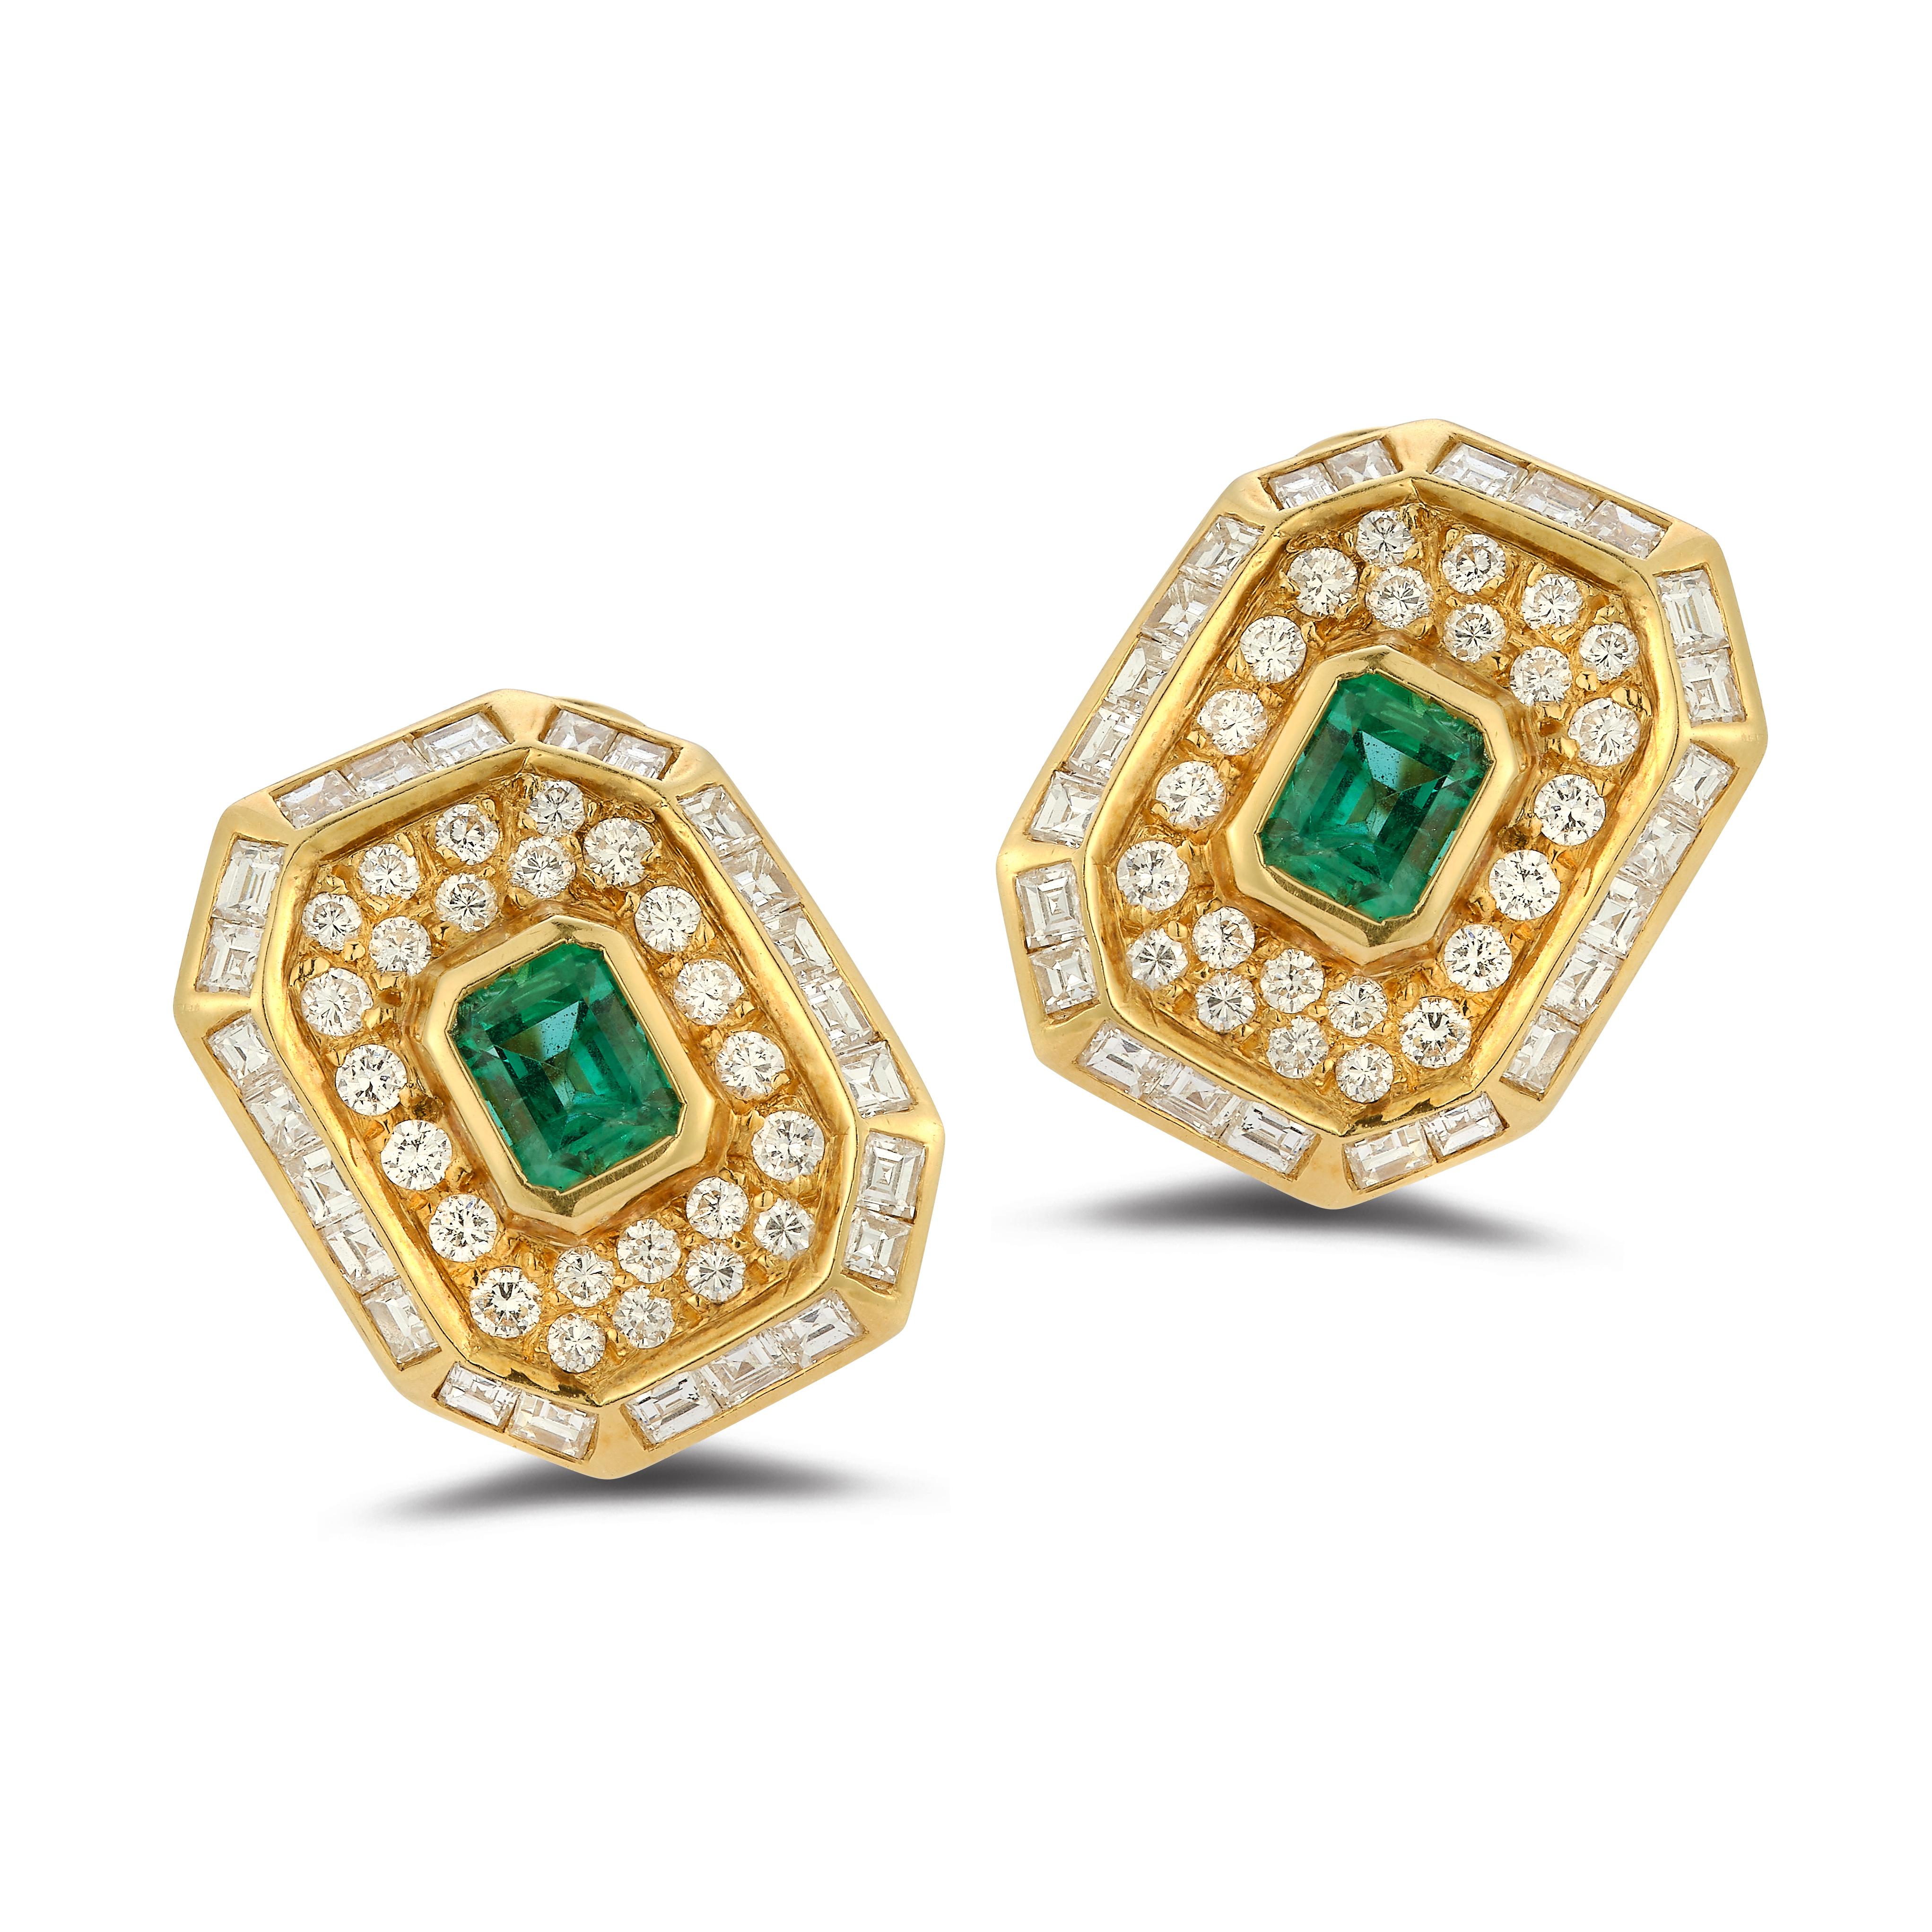 Smaragdschliff Smaragd & Diamant-Ohrringe

Ohrringe aus 18 Karat Gold mit je einem zentralen Smaragd im Smaragdschliff, umgeben von runden und Baguette-Diamanten.

Ungefähres Gesamtgewicht des Smaragds: 1,40ct

Ungefähres Gesamtgewicht der